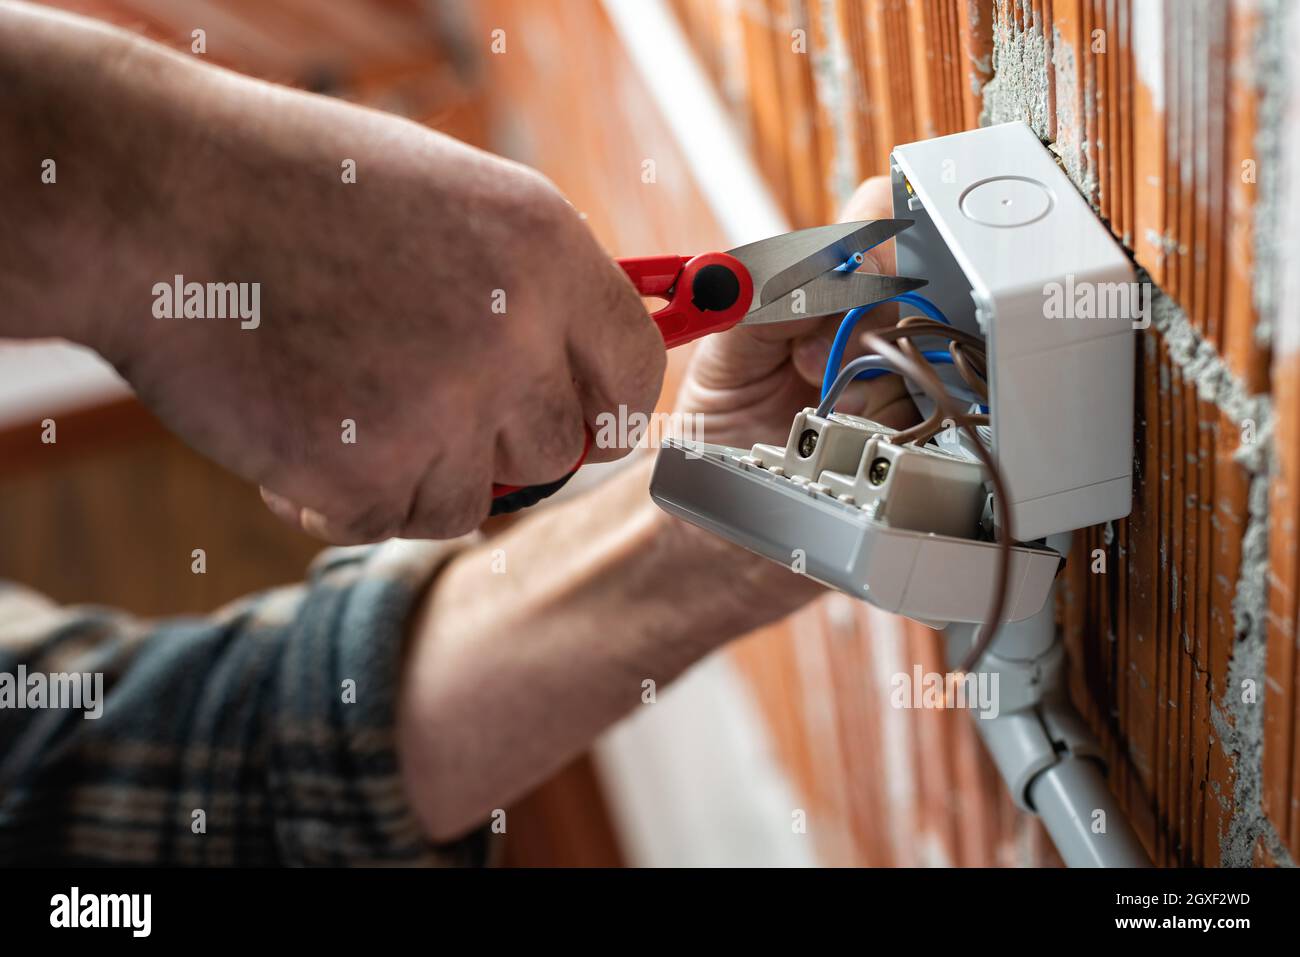 Vista dal basso. L'elettricista che lavora con le forbici prepara i cavi elettrici di un impianto elettrico. Industria edile. Foto Stock